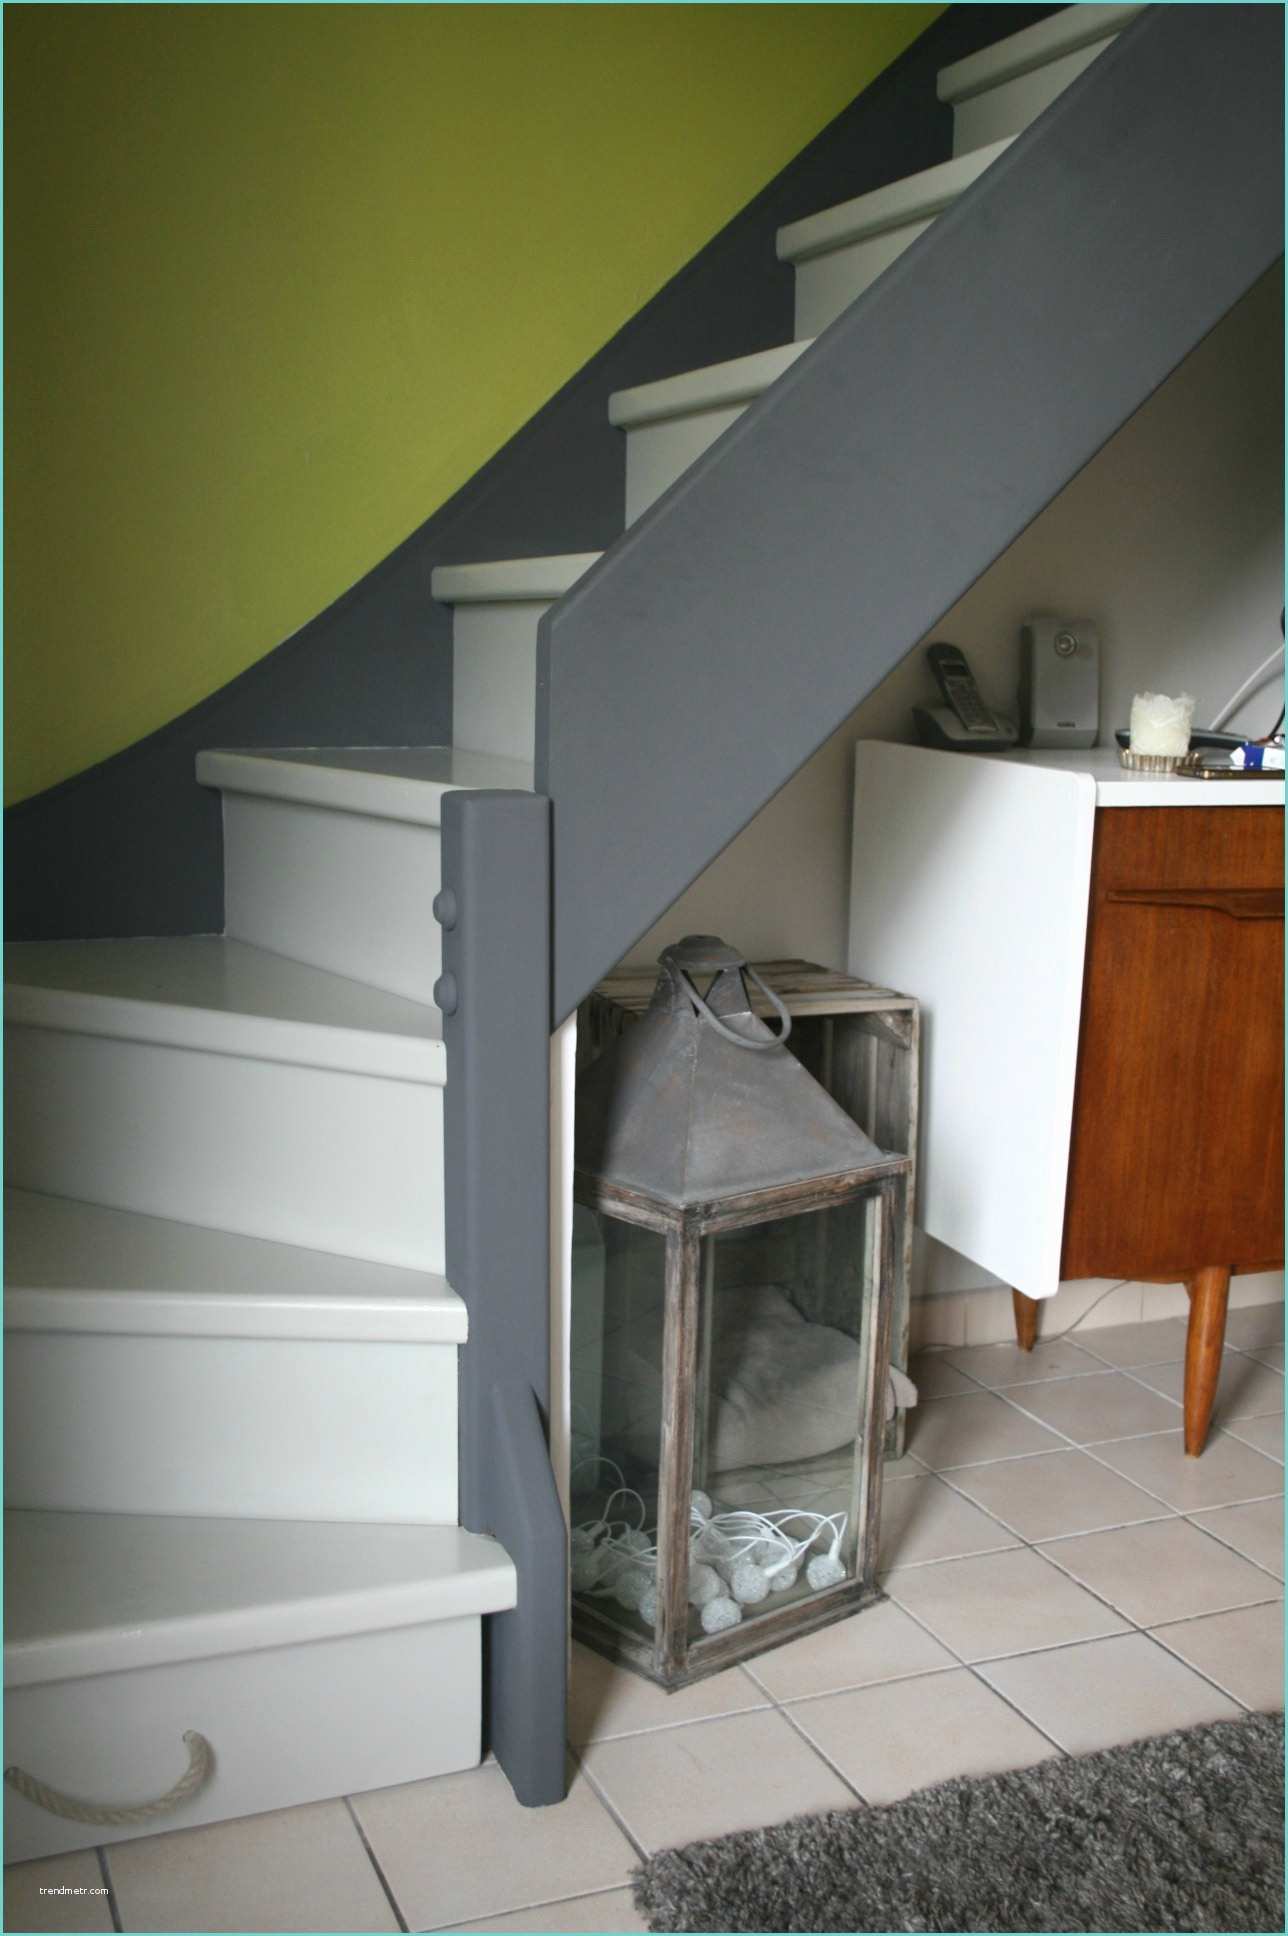 Escaliers Peints En Gris Escalier Peint N°17 L atelier